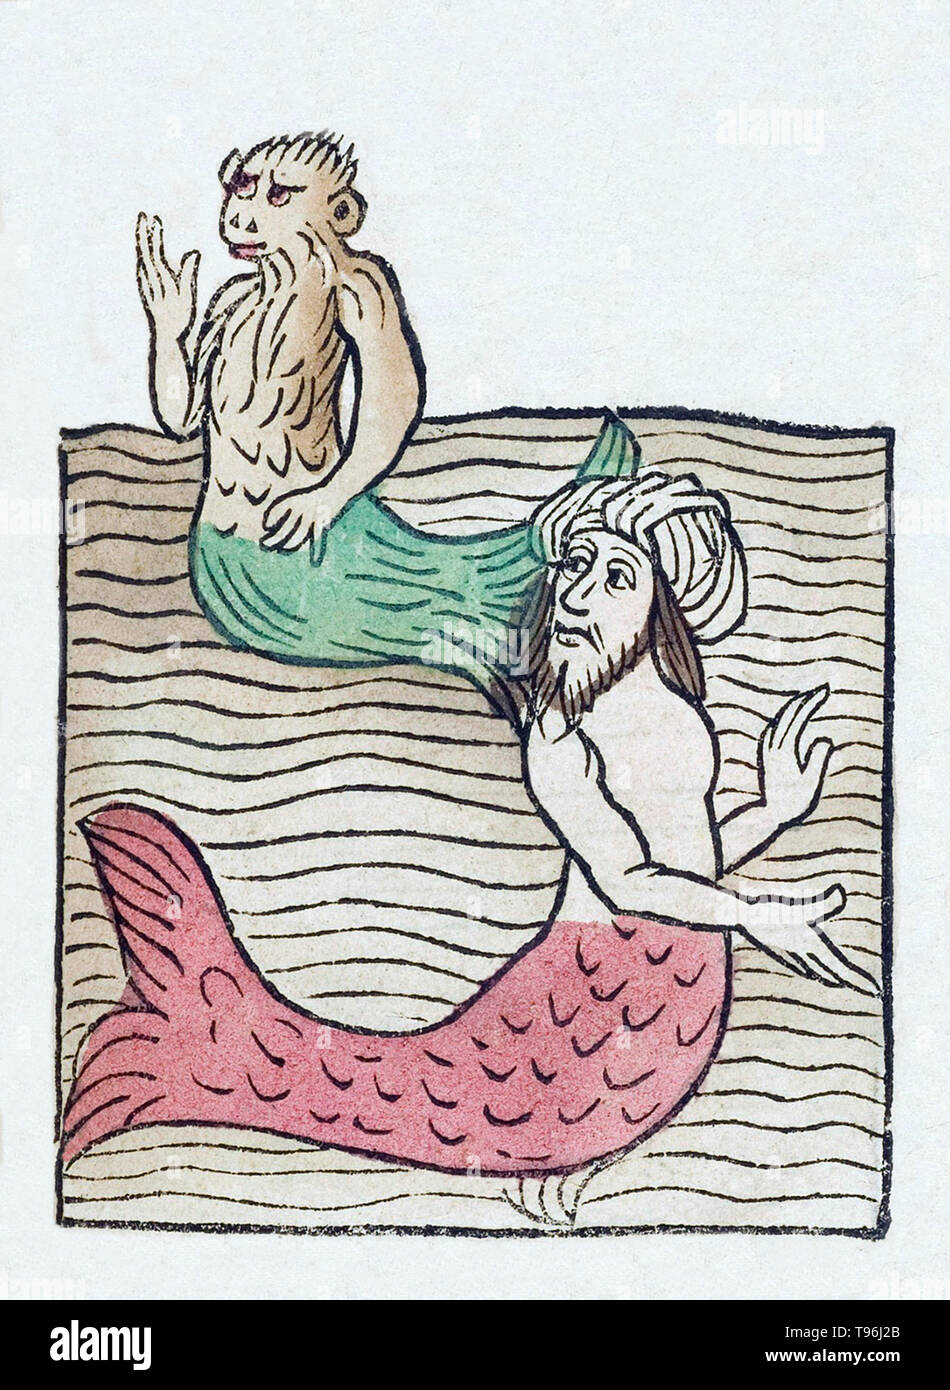 Mermen ont la forme d'un homme de la taille et sont de poisson à partir de la taille, ayant des queues de poissons à écailles, à la place de jambes. L'Hortus Sanitatis (Jardin de la santé), la première encyclopédie d'histoire naturelle, a été publié par Jacob Meydenbach en Allemagne, 1491. Il décrit des plantes et animaux (à la fois réelle et mythique) avec minéraux et de divers métiers, avec leur valeur thérapeutique et de la méthode de préparation. La gravure sur bois à la main, les illustrations sont stylisées mais souvent facilement reconnaissable. L'édition 1547. Banque D'Images